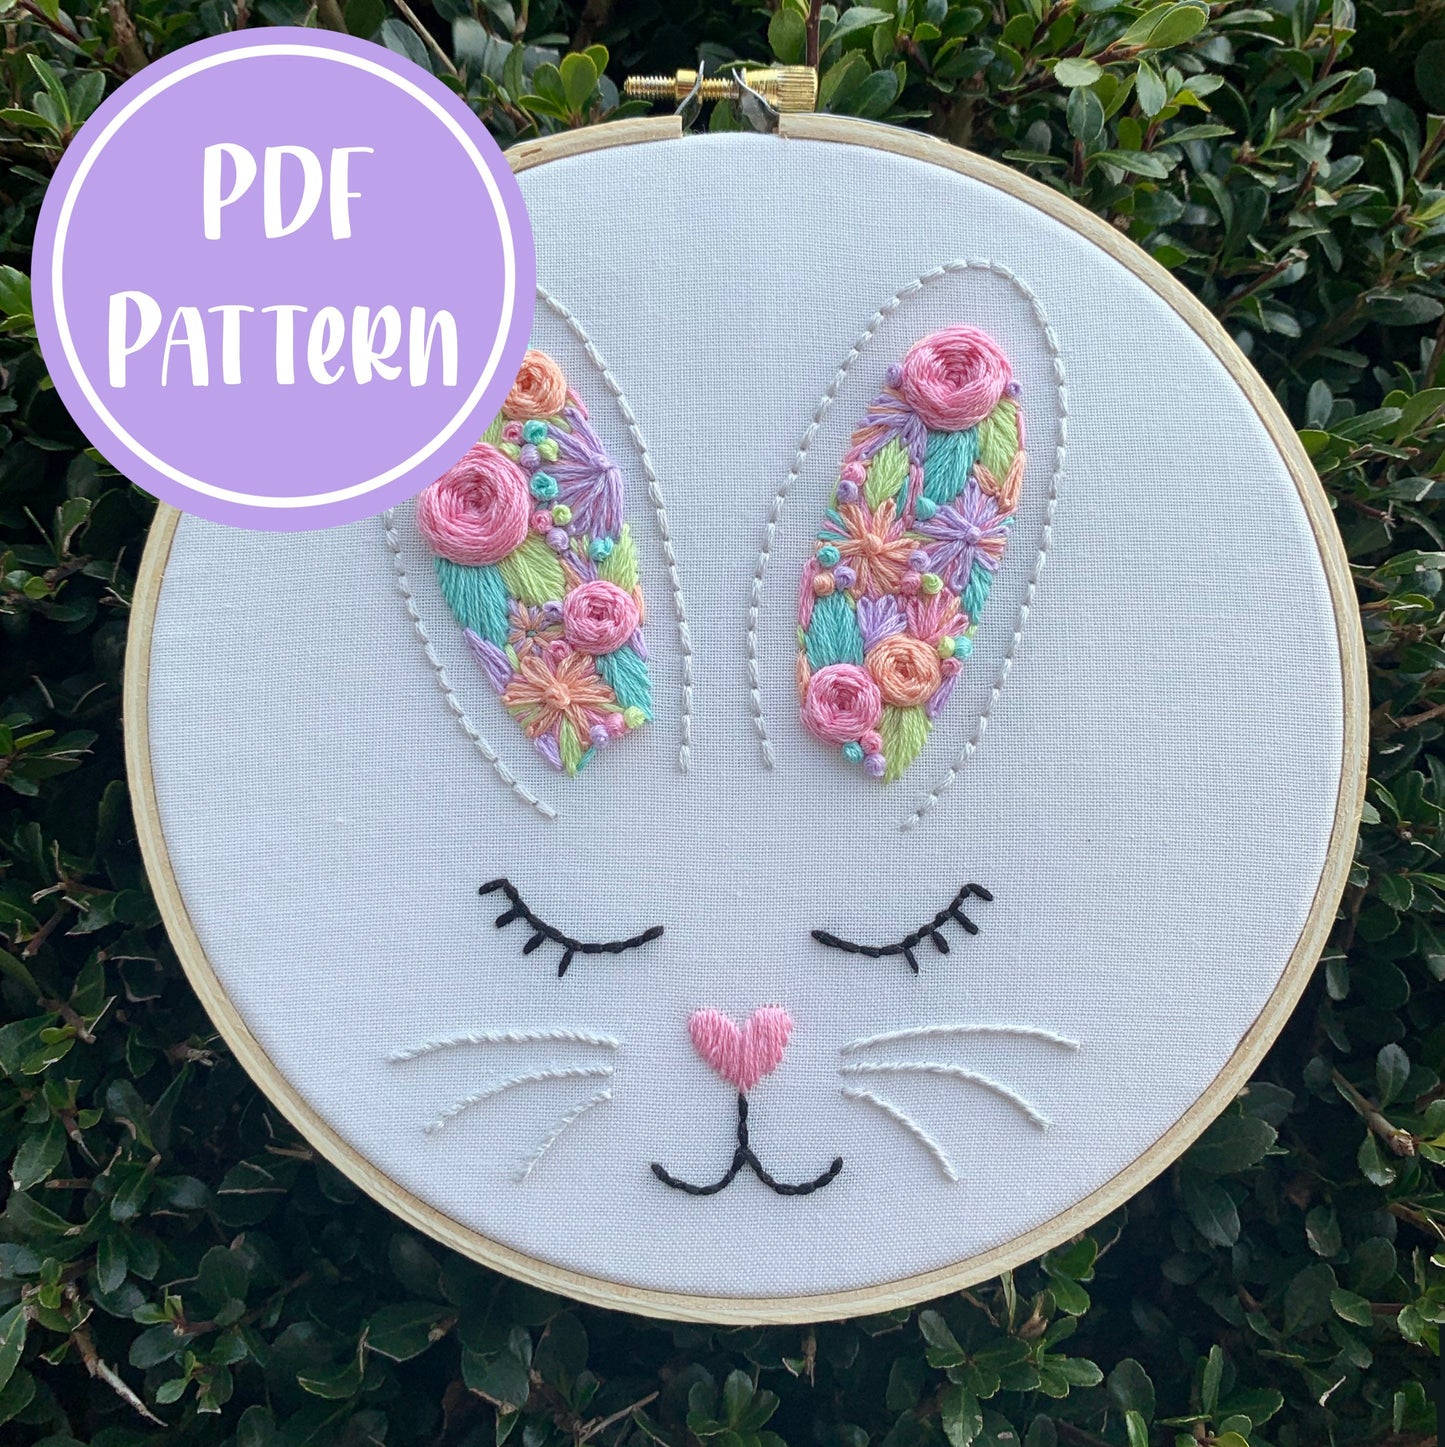 PDF Pattern - Hoppy Easter Bunny, Beginner/Intermediate Embroidery Pattern